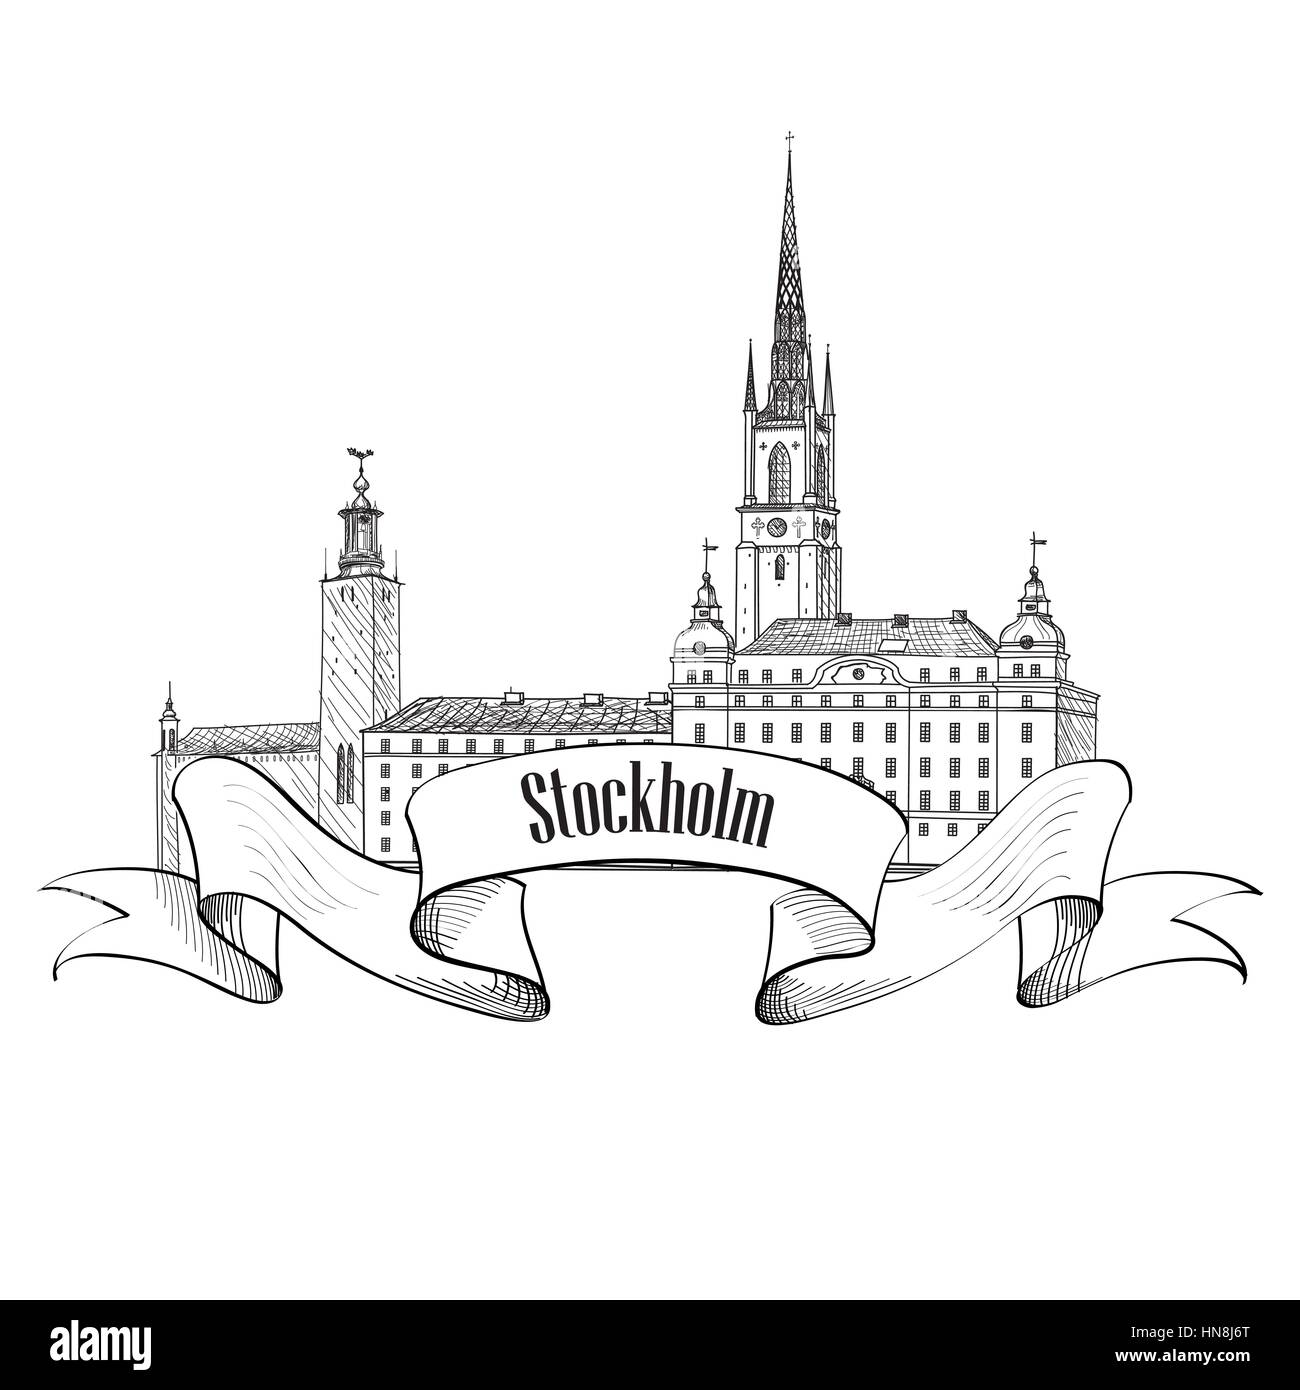 Stockholm label isoliert. Reisen Schweden Symbol. die Stockholmer Altstadt Architektur detaillierte Skyline. Vektor Wahrzeichen Gebäude Abbildung. Stock Vektor